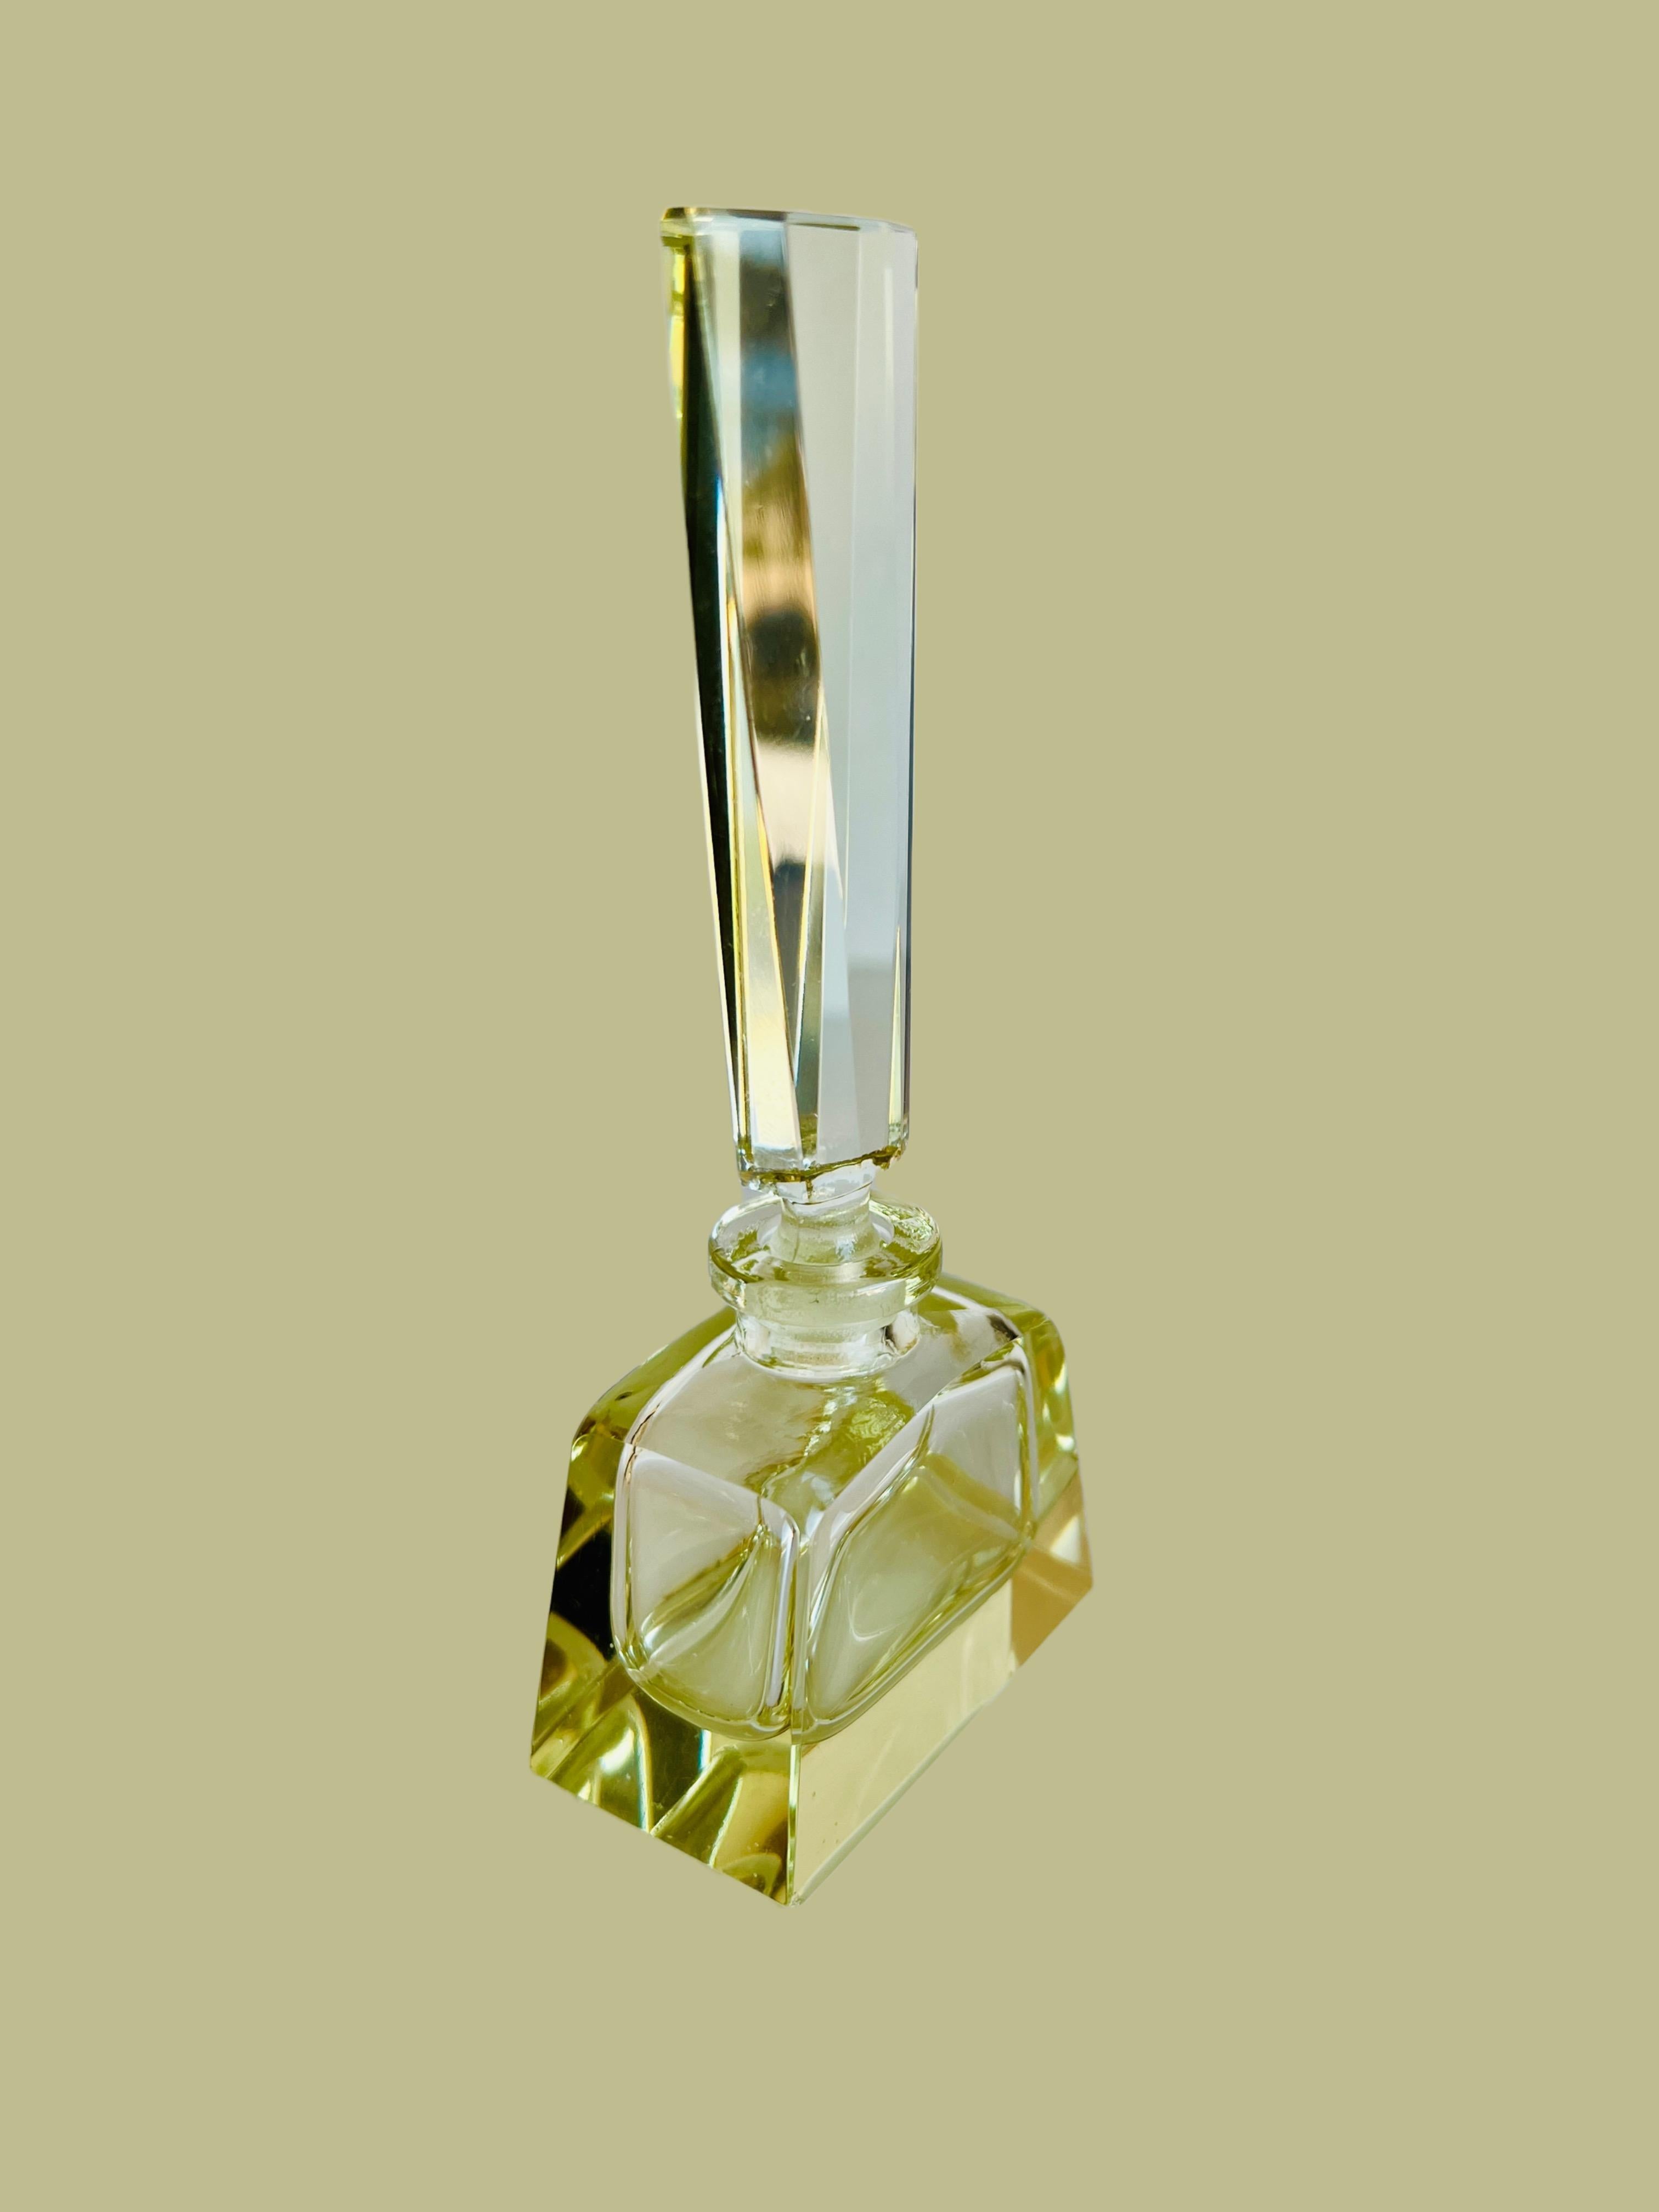 Dieser schöne Parfümflakon verkörpert die Anmut und Raffinesse einer vergangenen Epoche. Der Flakon aus hochwertigem Kristall mit einem zarten, hellgelben Farbton hat einen kühnen, rechteckigen Körper, der auf einem massiven, quadratischen Sockel